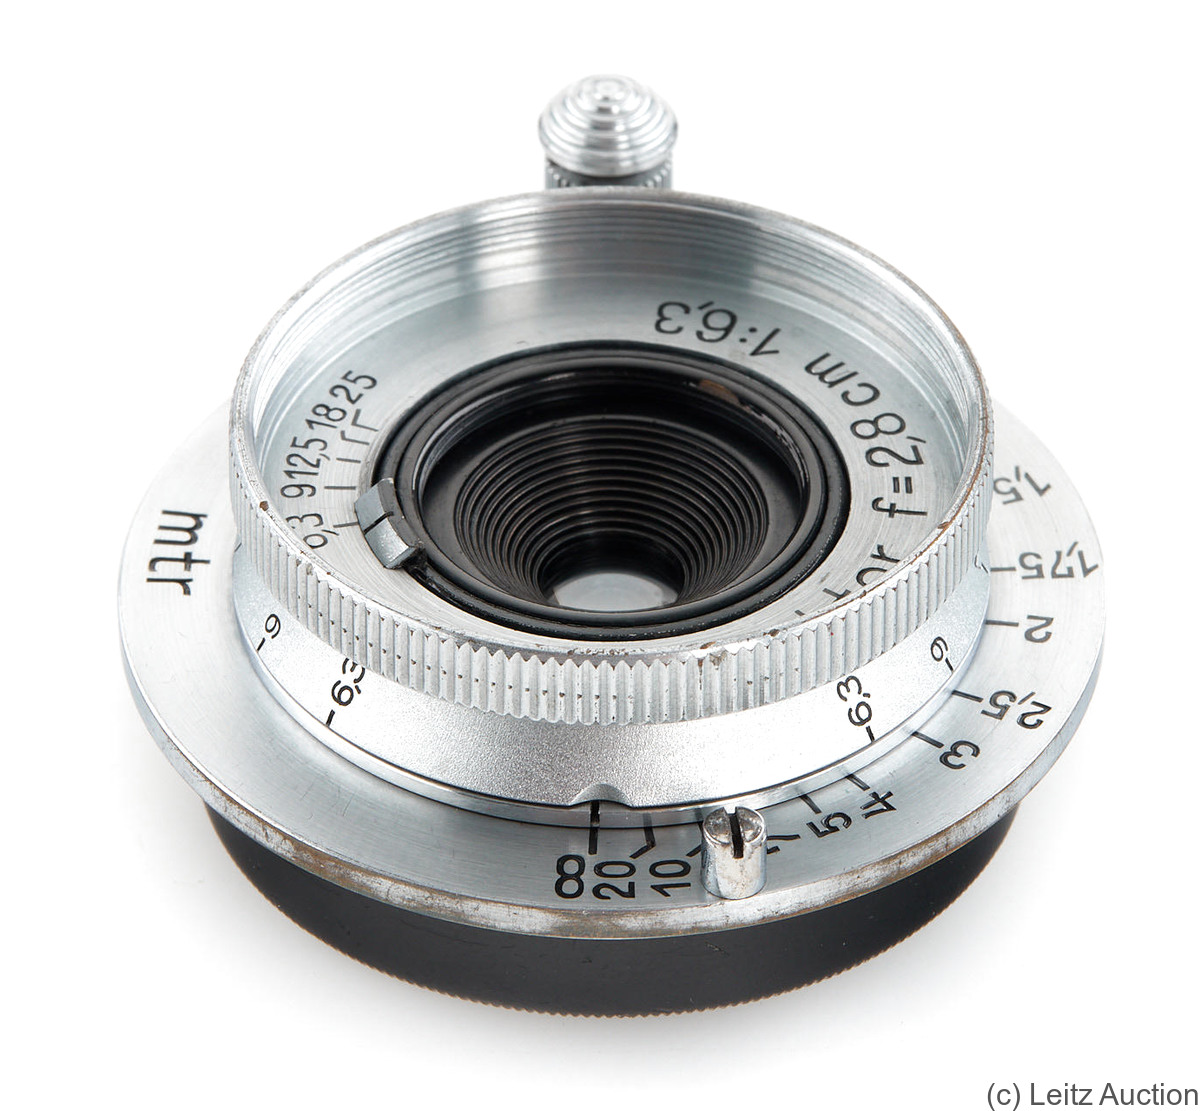 Leitz: 28mm (2.8cm) f6.3 Hektor (SM, chrome) camera